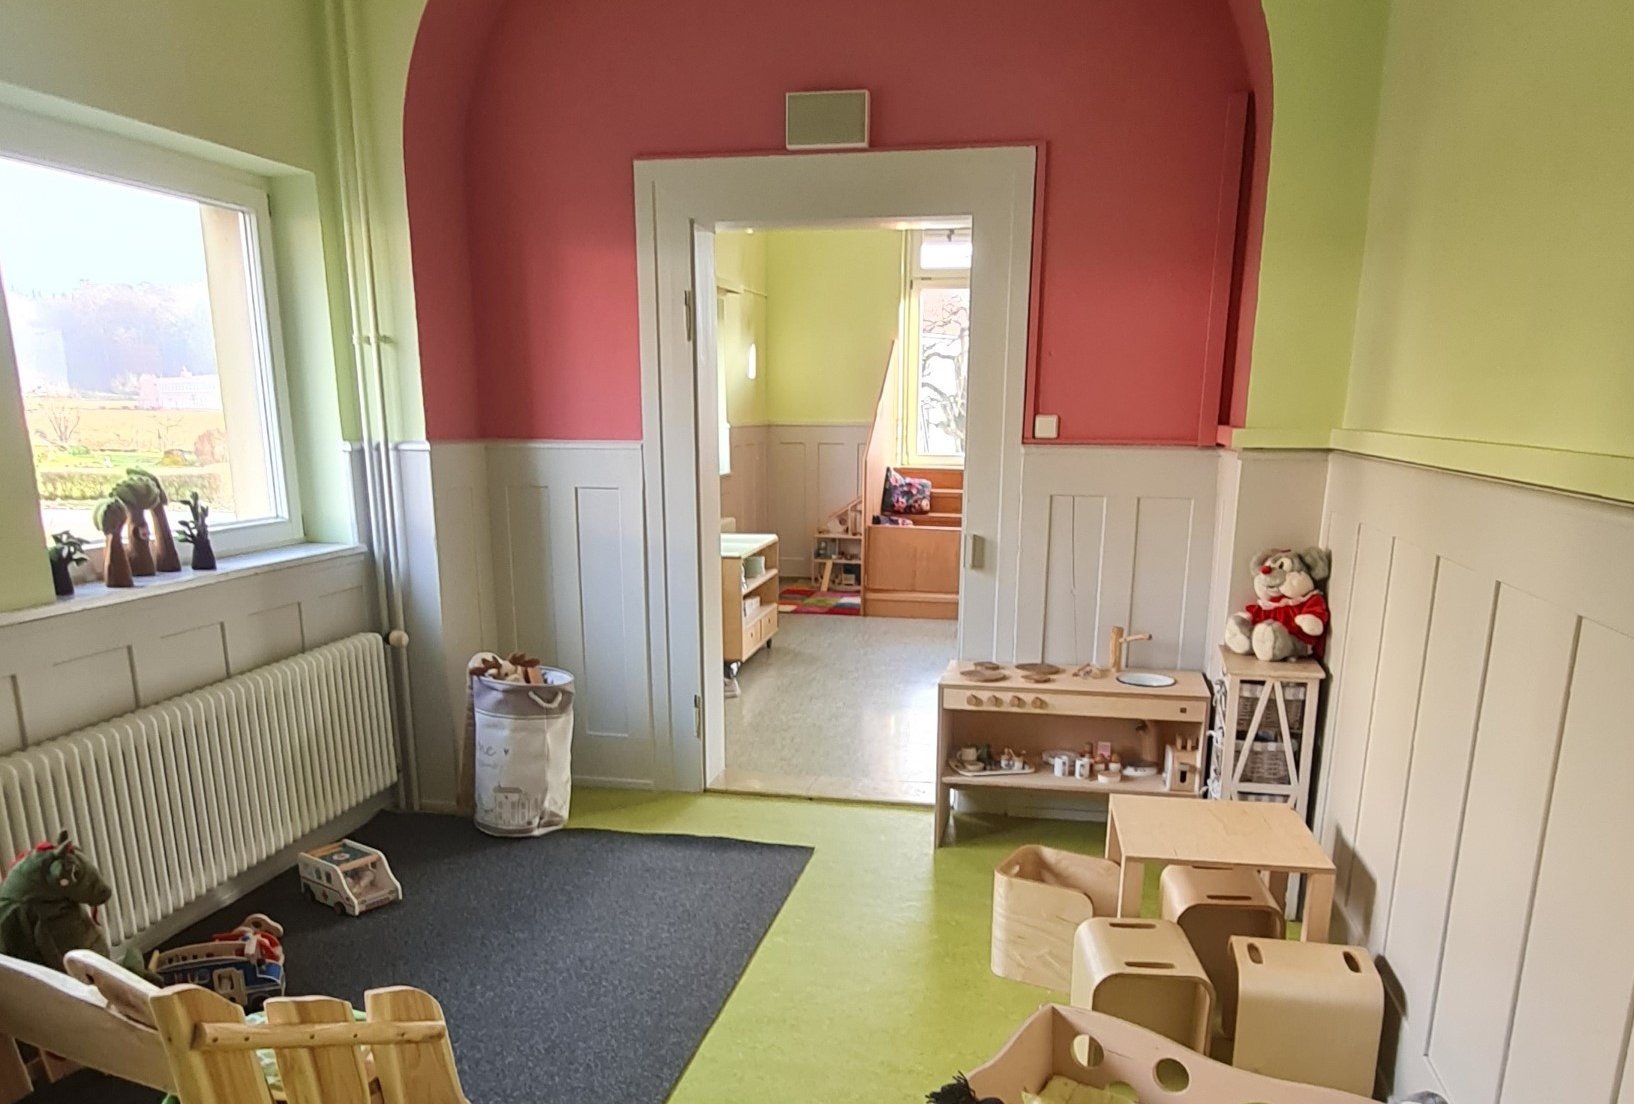  Kinderhaus Seestern - Foto: Gemeinde 